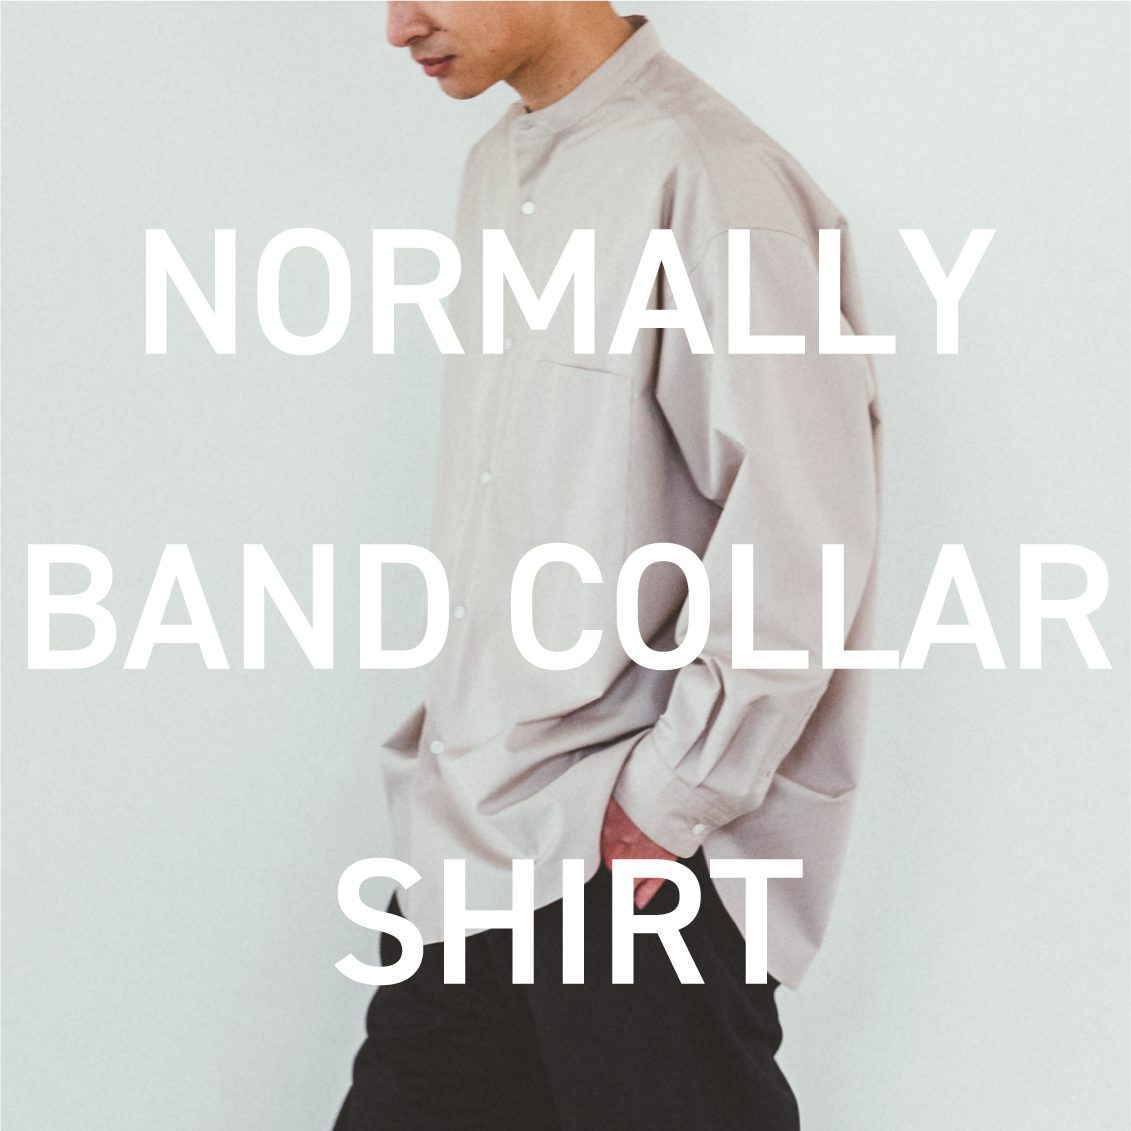 新商品】「NORMALLY」からバンドカラーシャツが登場です。 - 北欧 